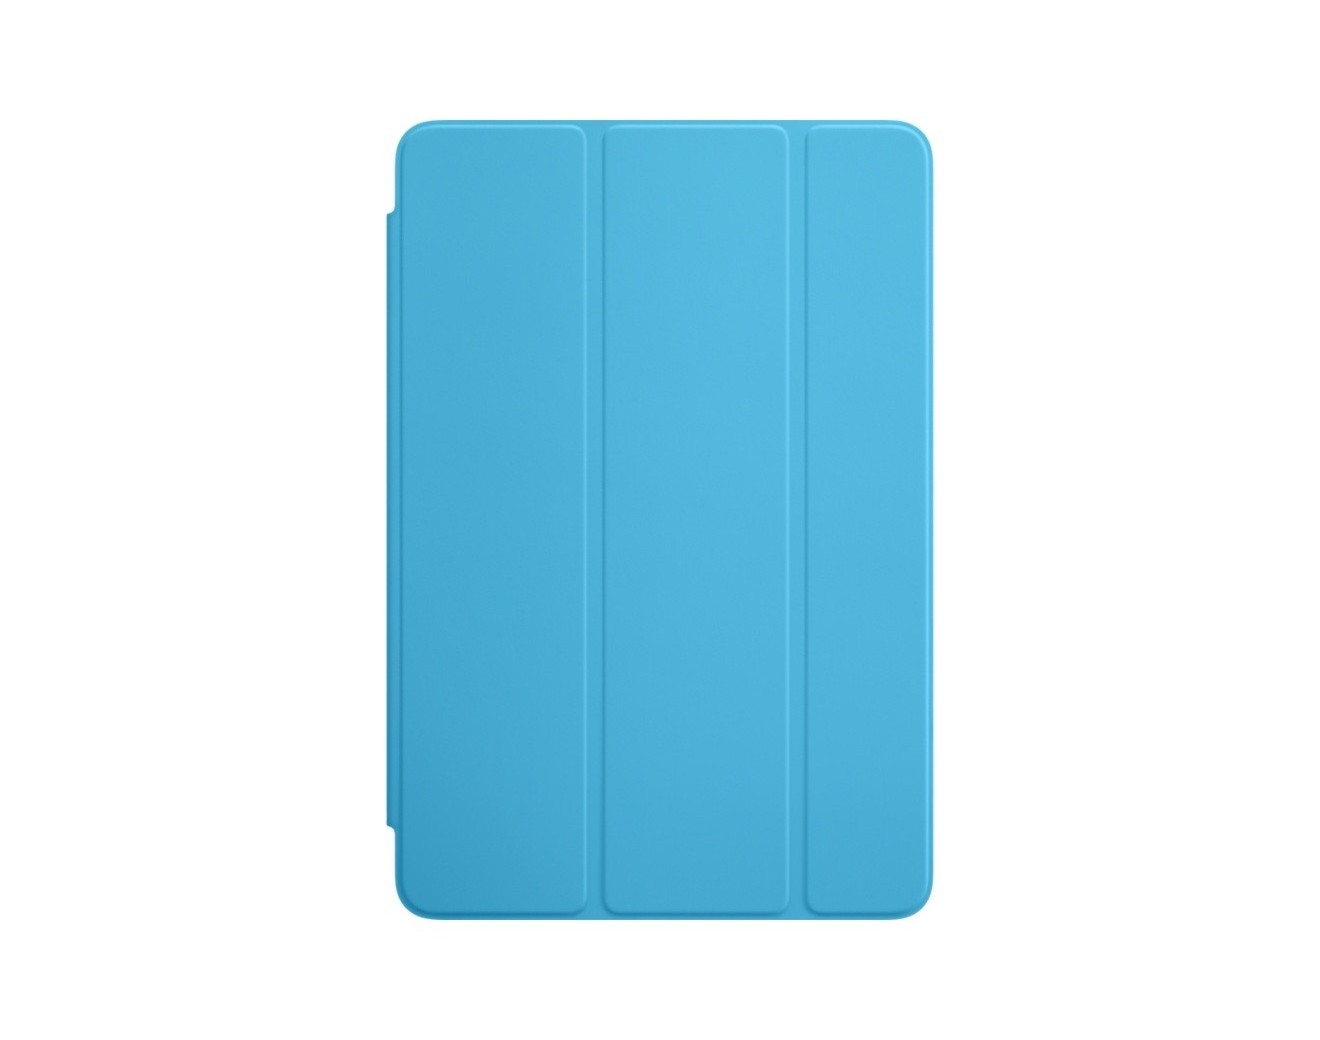 Apple Smart Cover за iPad Mini 4 - Blue